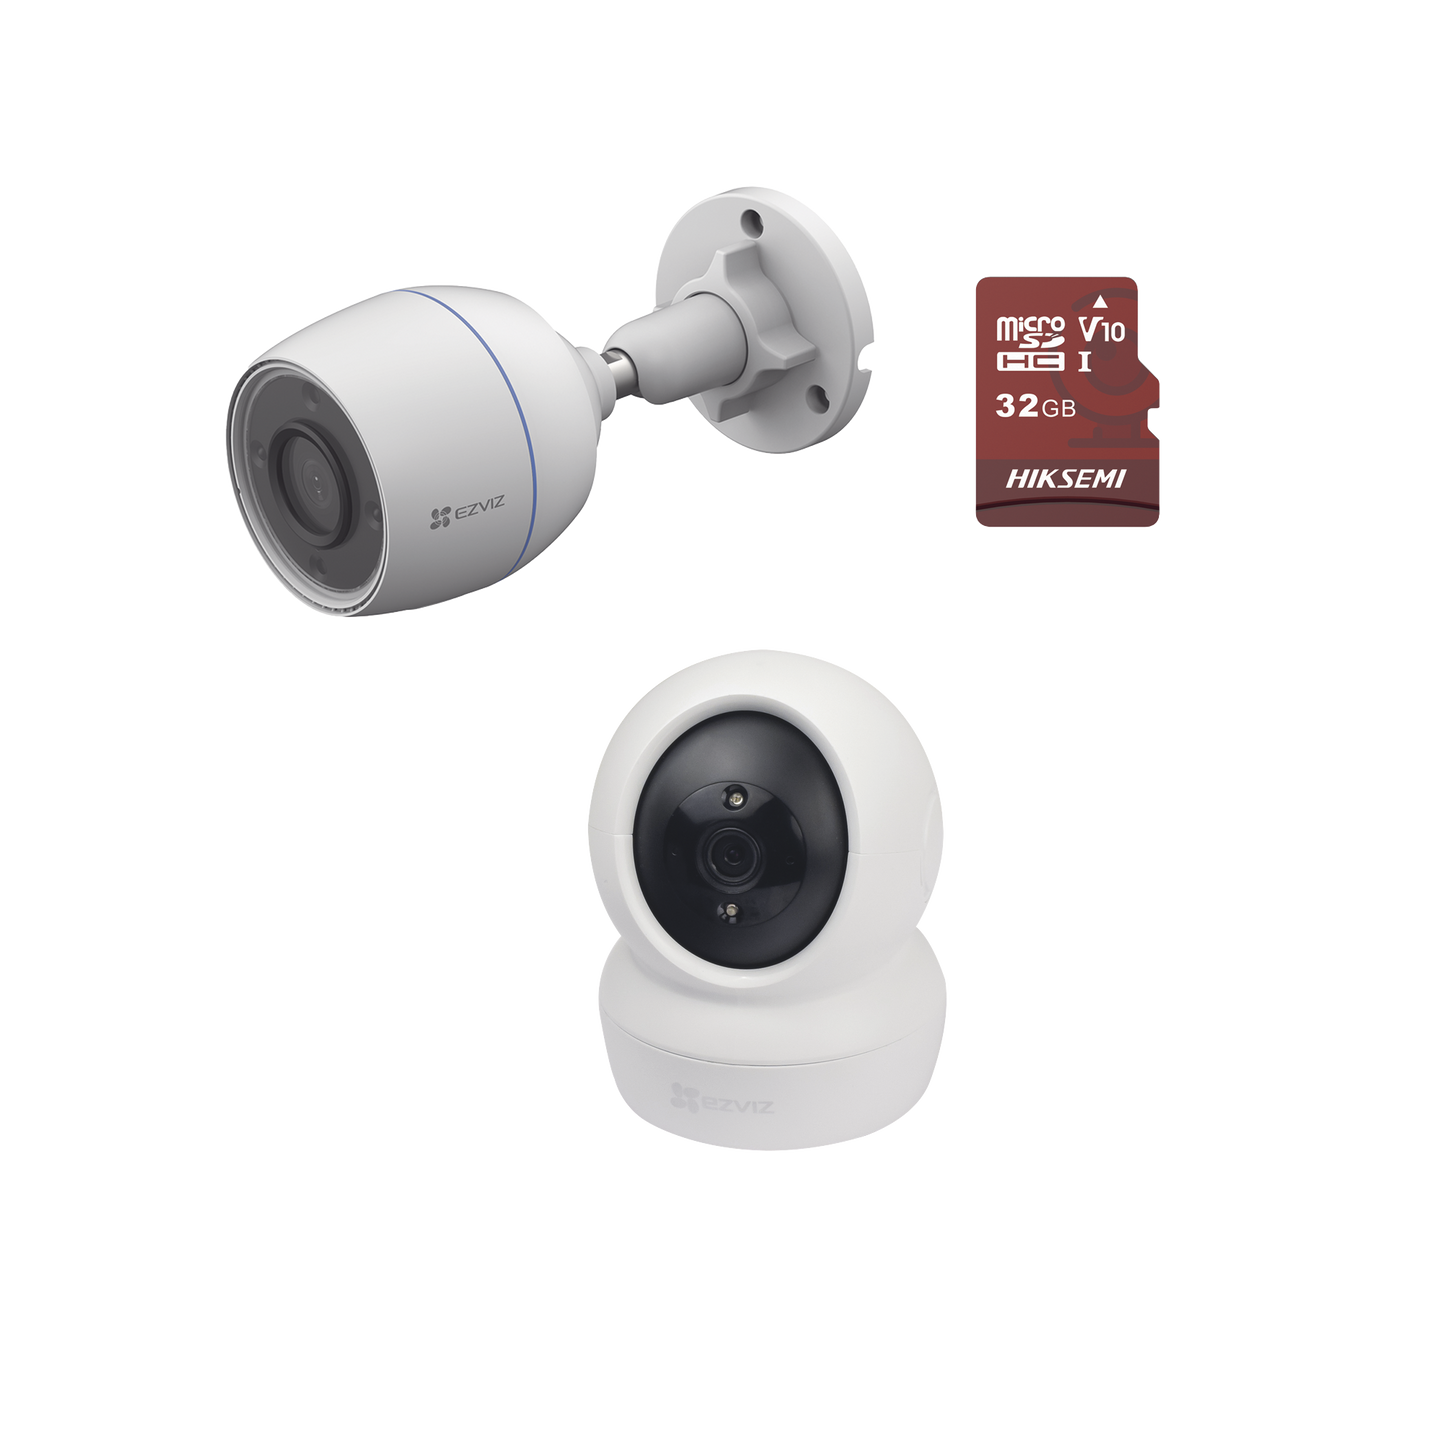 Kit de cámaras WiFi / Incluye 1 pieza C6N  Para Uso en Interior / 1 pieza CS-H3C Para Uso en Exterior / 1 PZA Micro SD HS-TF-E1/32G / Detección de Movimiento / Notificaciones Instantáneas